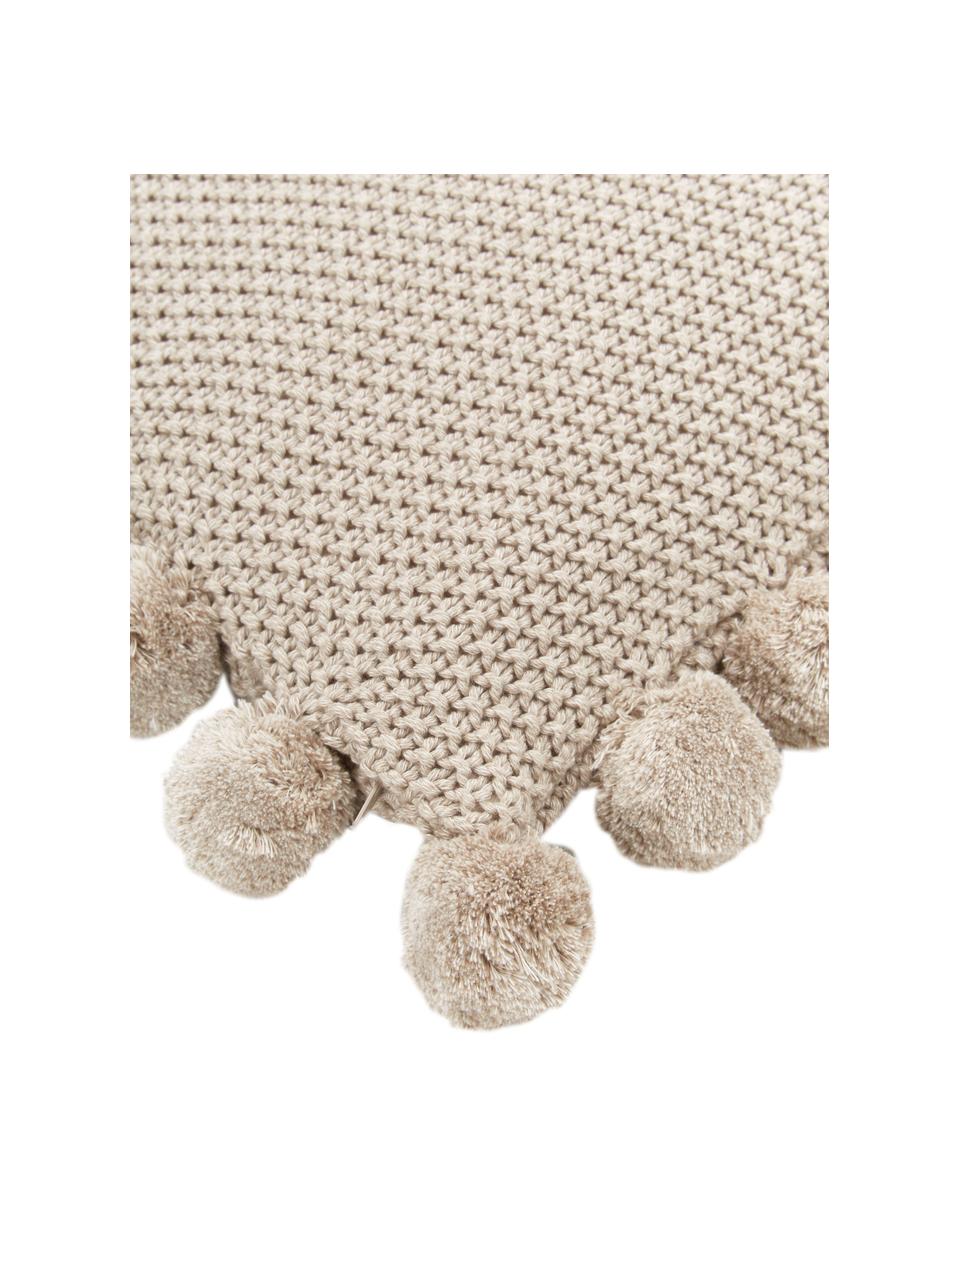 Federa arredo a maglia beige con pompon Molly, 100% cotone, Beige, Larg. 40 x Lung. 40 cm